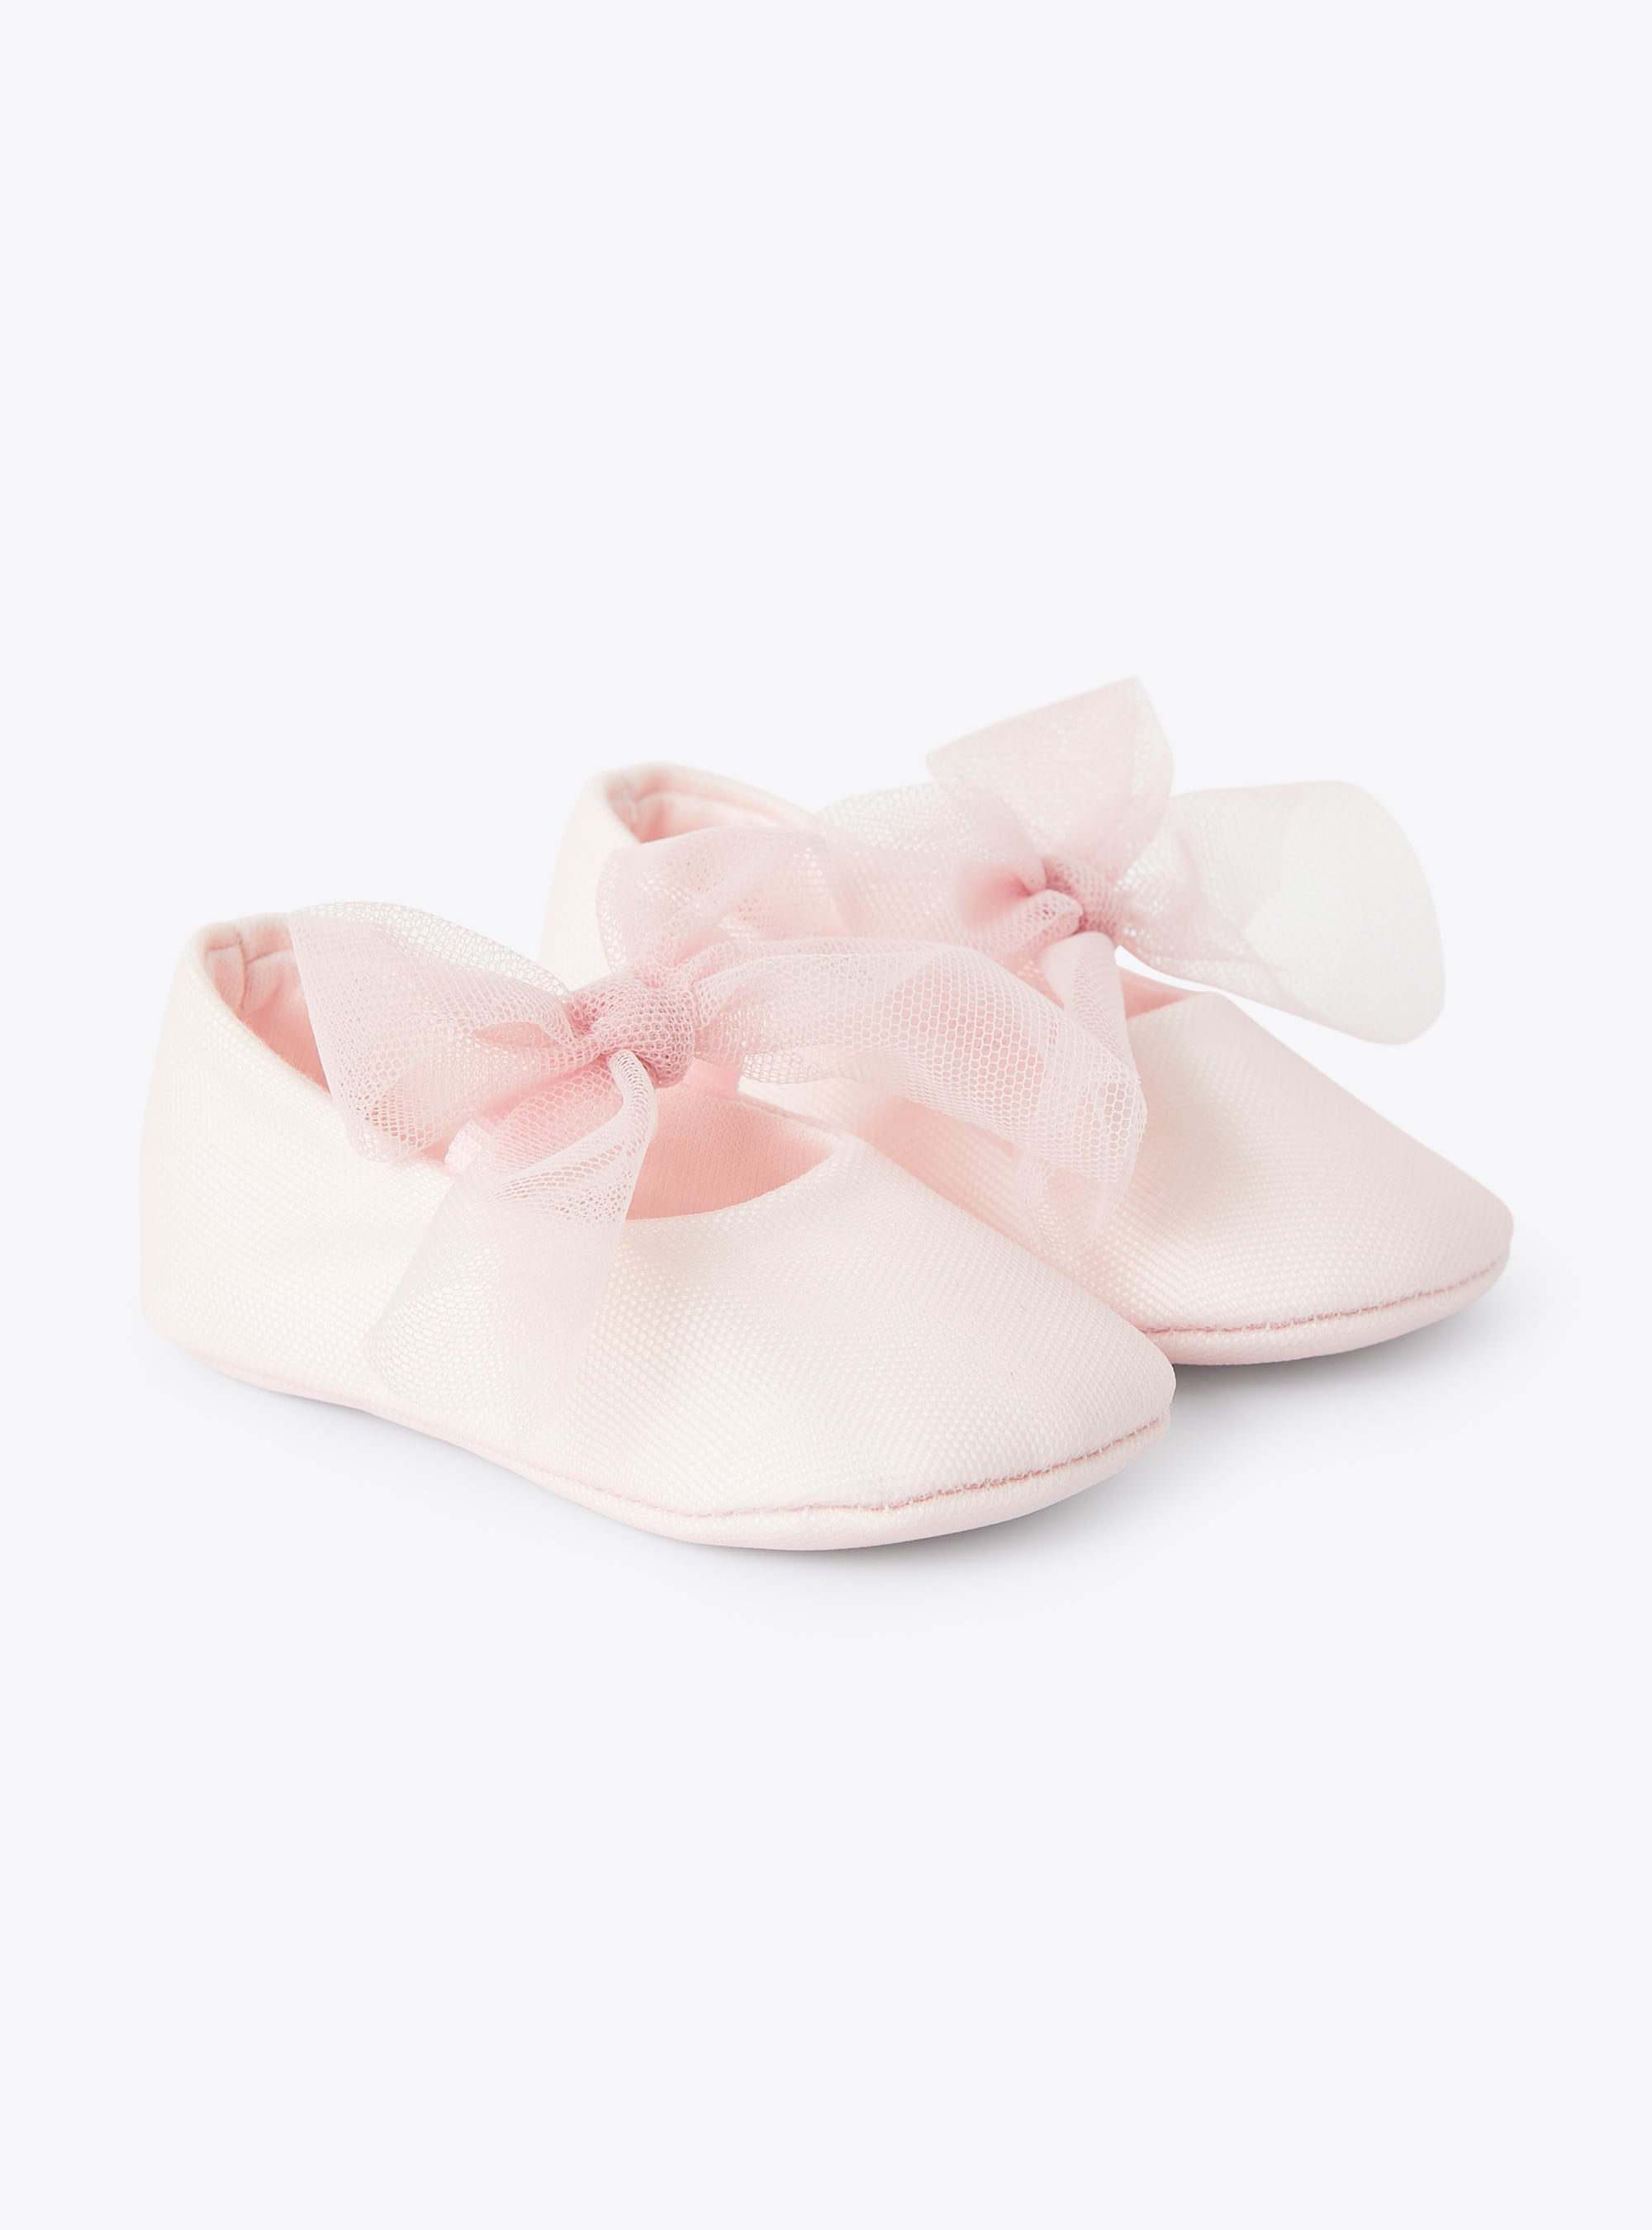 Пинетки для новорожденной, с бантом из розового тюля - Обувь - Il Gufo